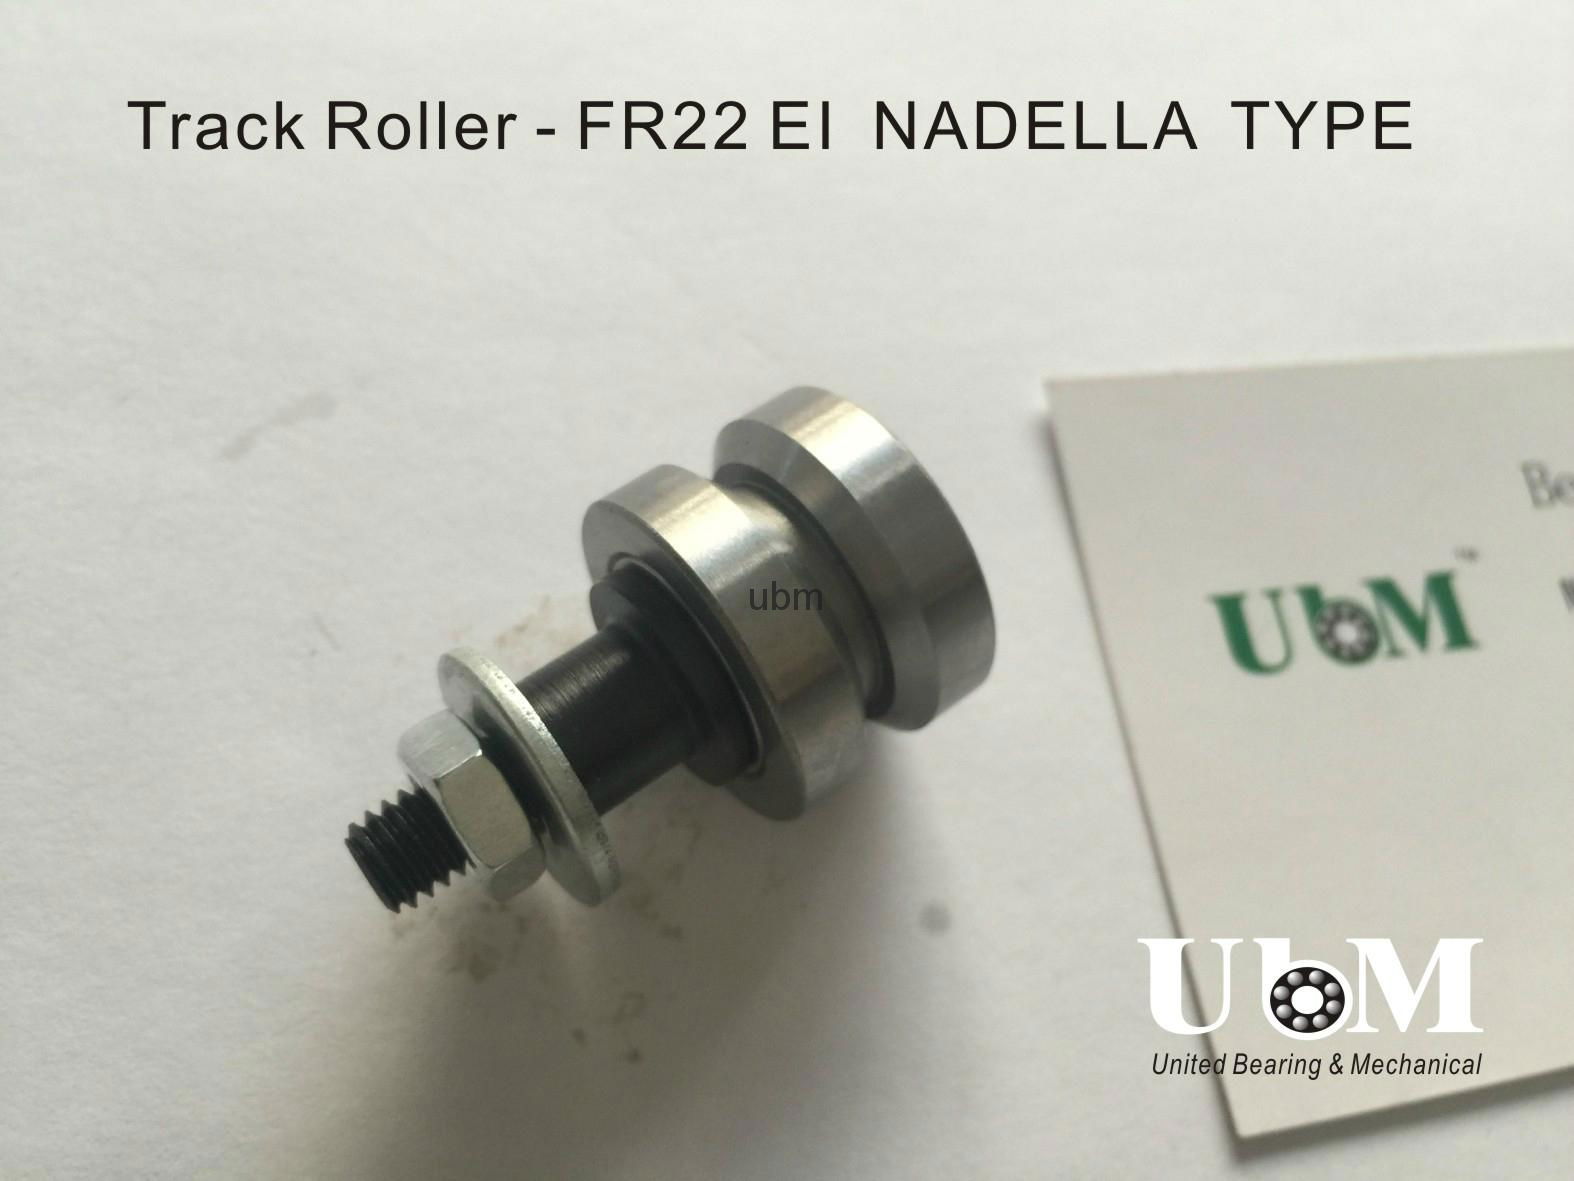 FR22EI, guide roller, bolt V-shaped roller bearing, vee type wheel bearing